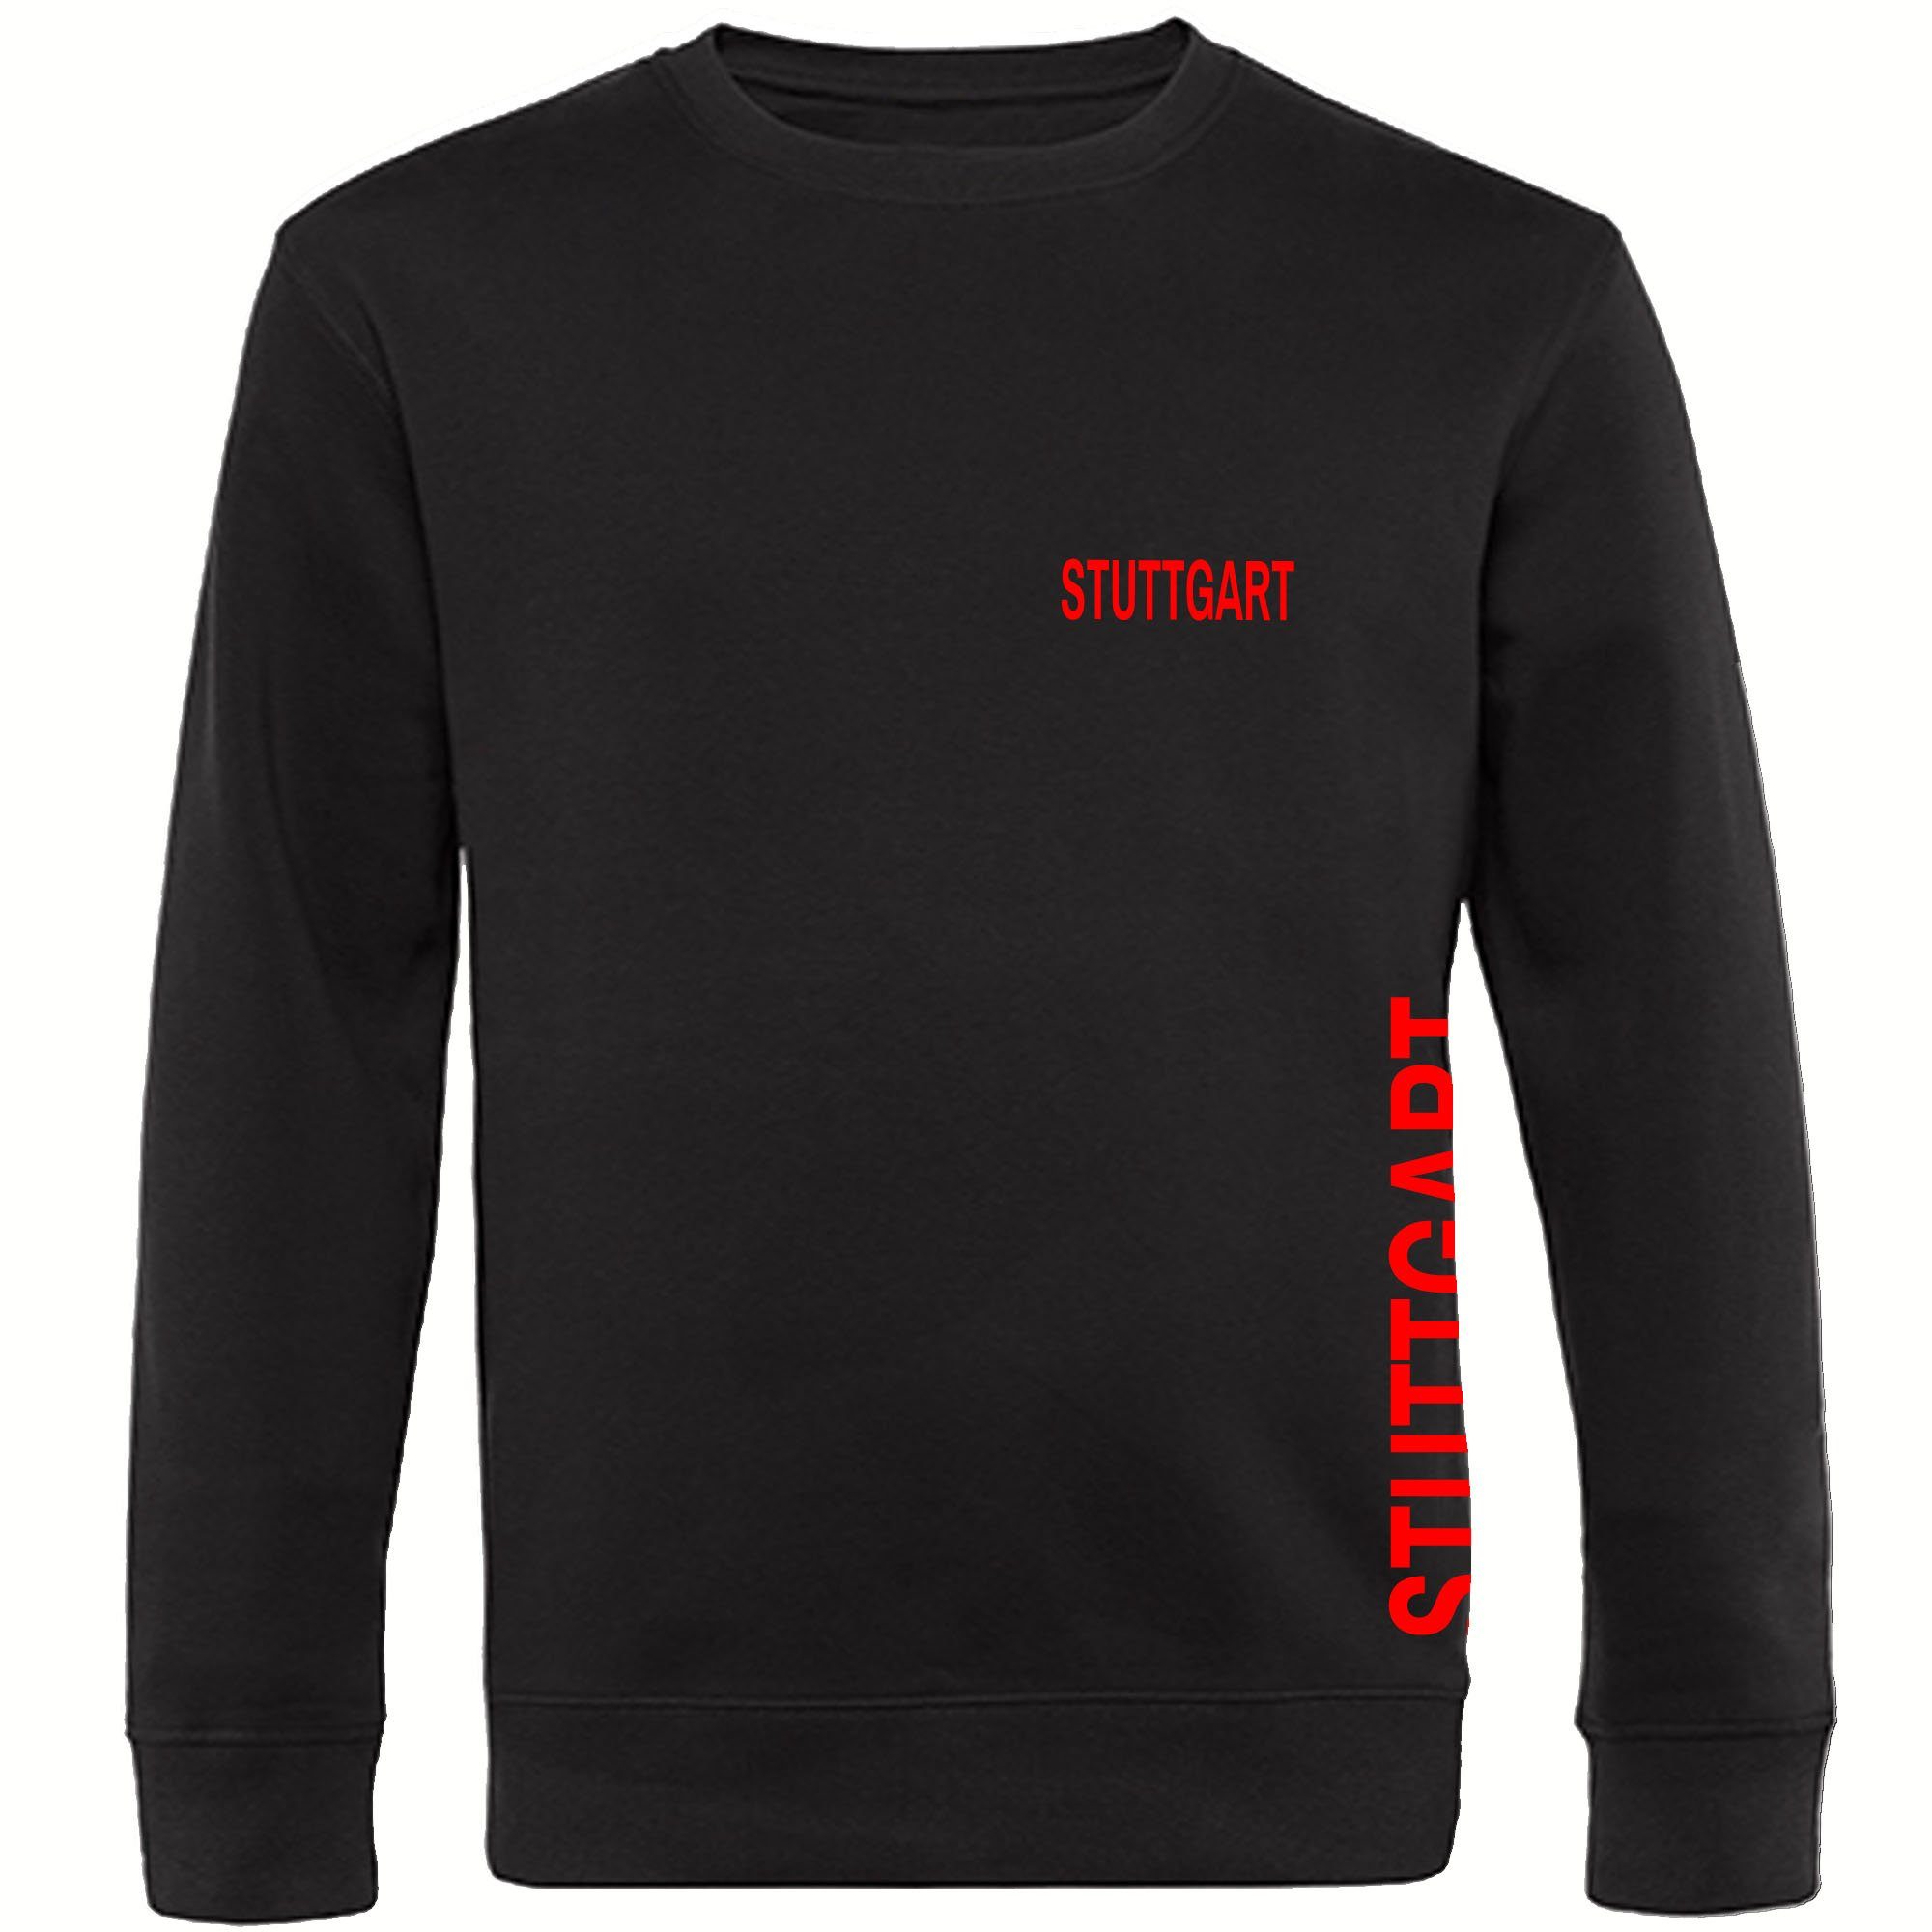 multifanshop Sweatshirt Stuttgart - Brust & Seite - Pullover